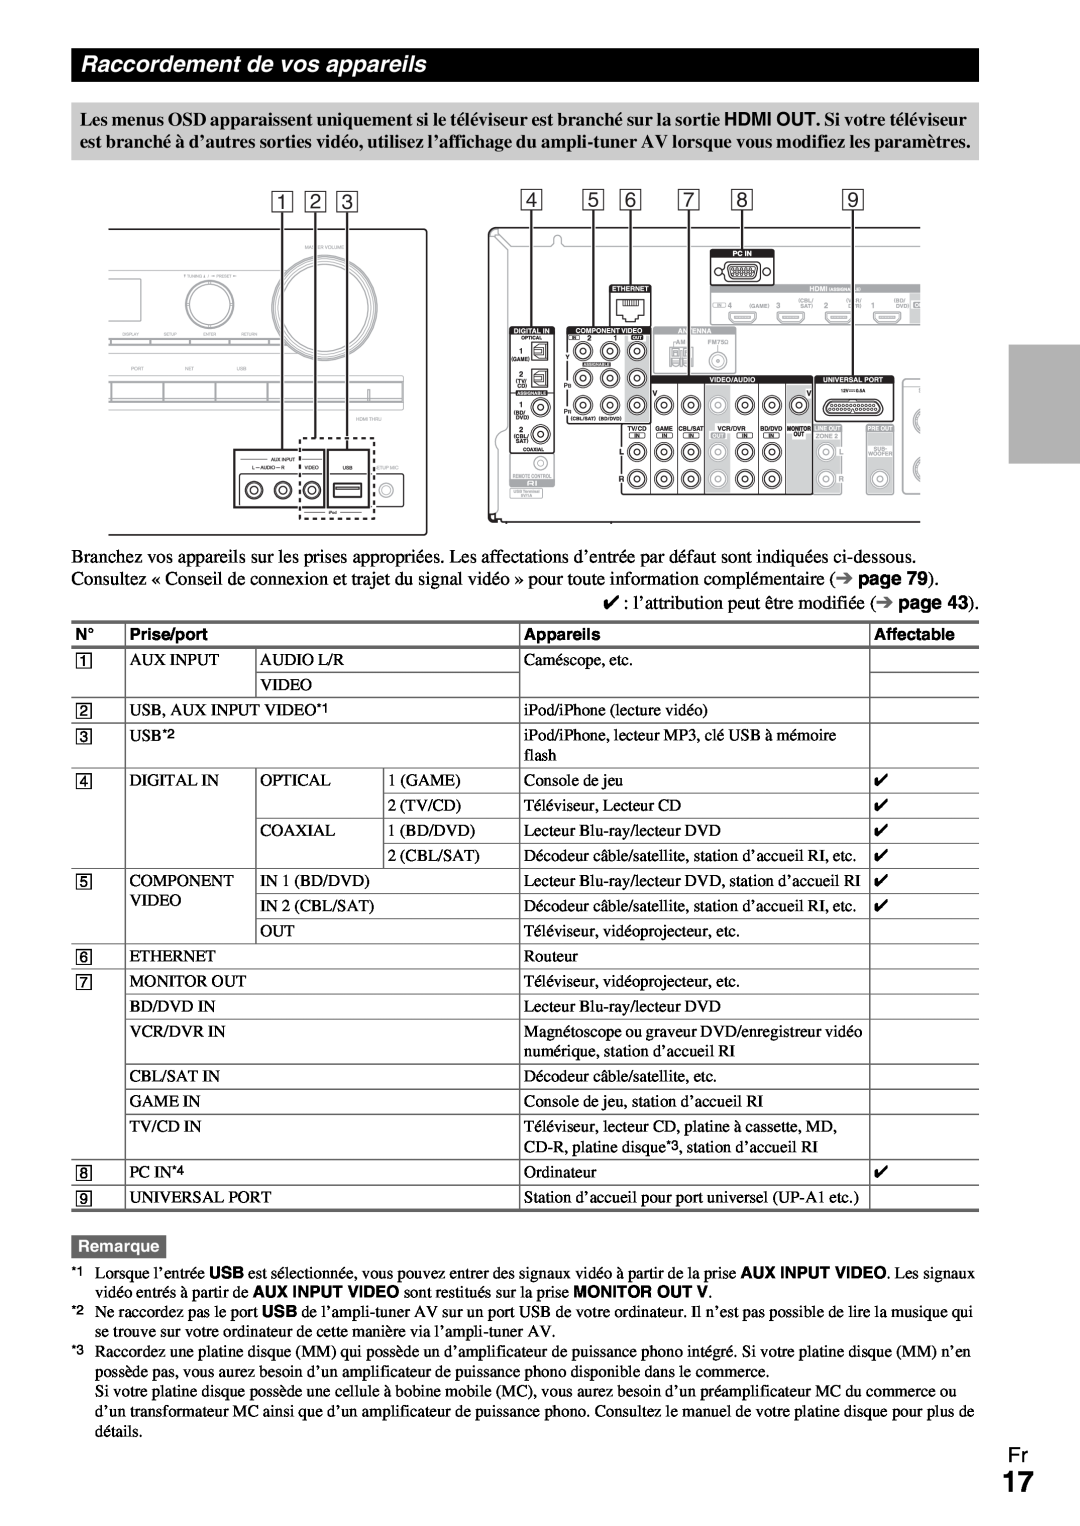 Onkyo HT-R990 instruction manual Raccordement de vos appareils, A B C, l’attribution peut être modifiée page, Remarque 